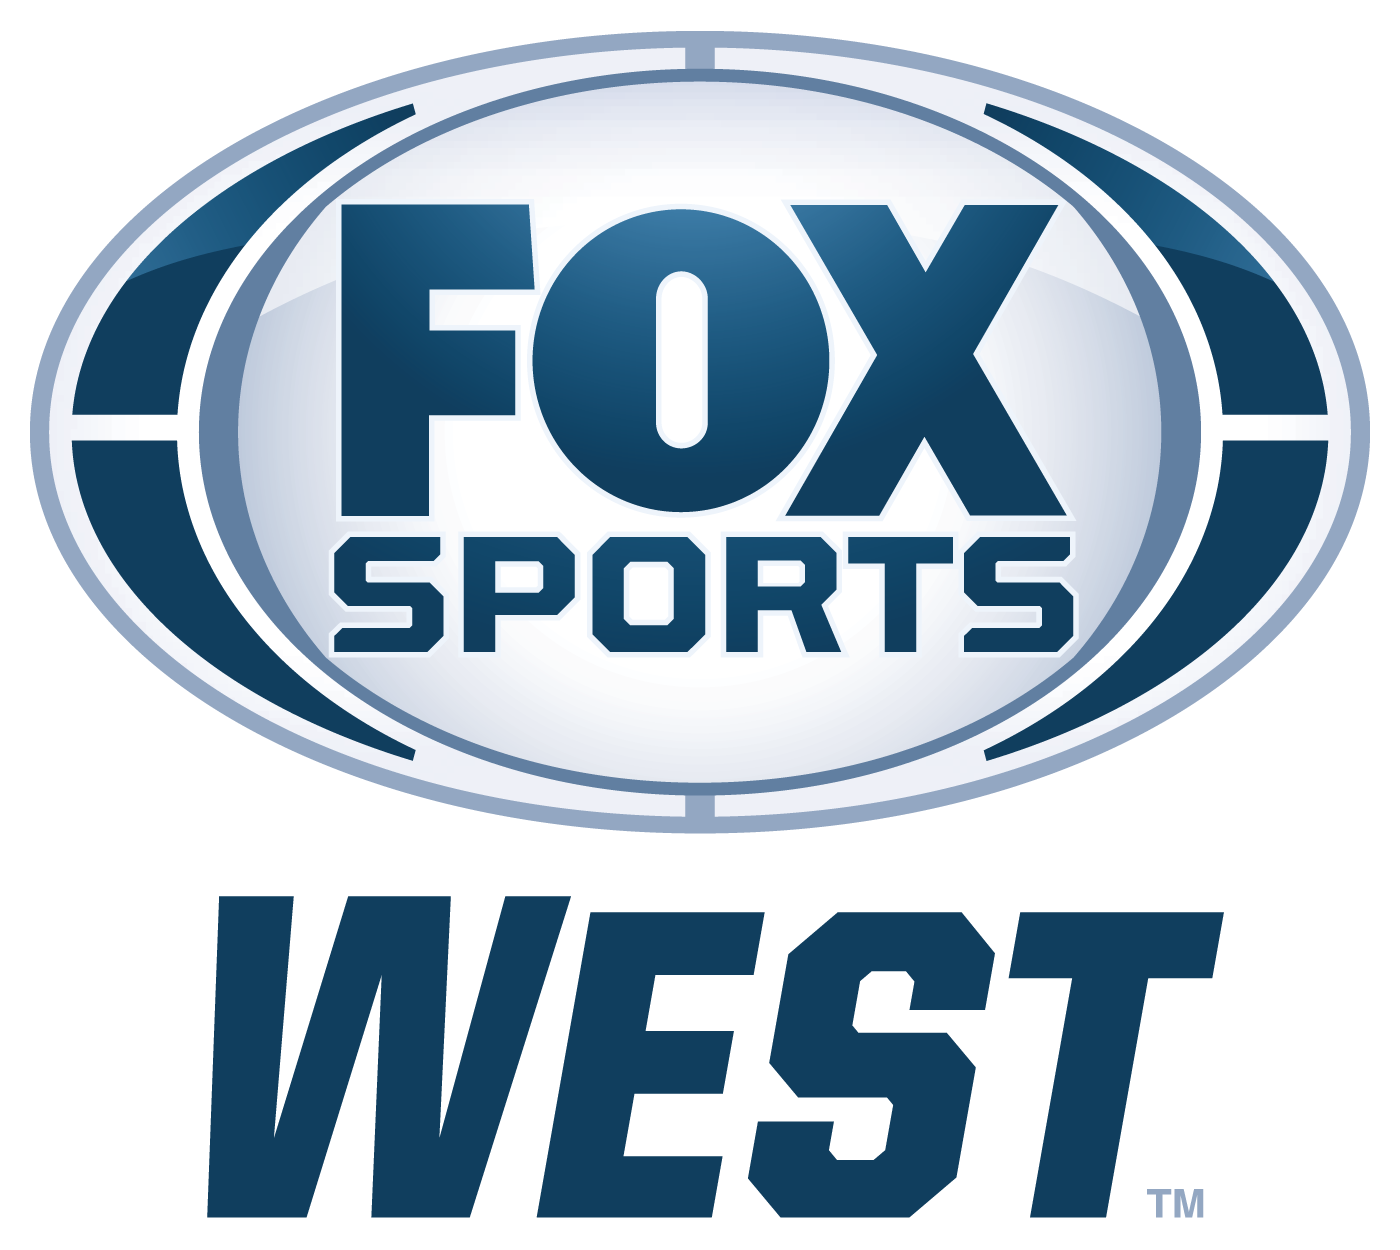 Fox sports west 2012